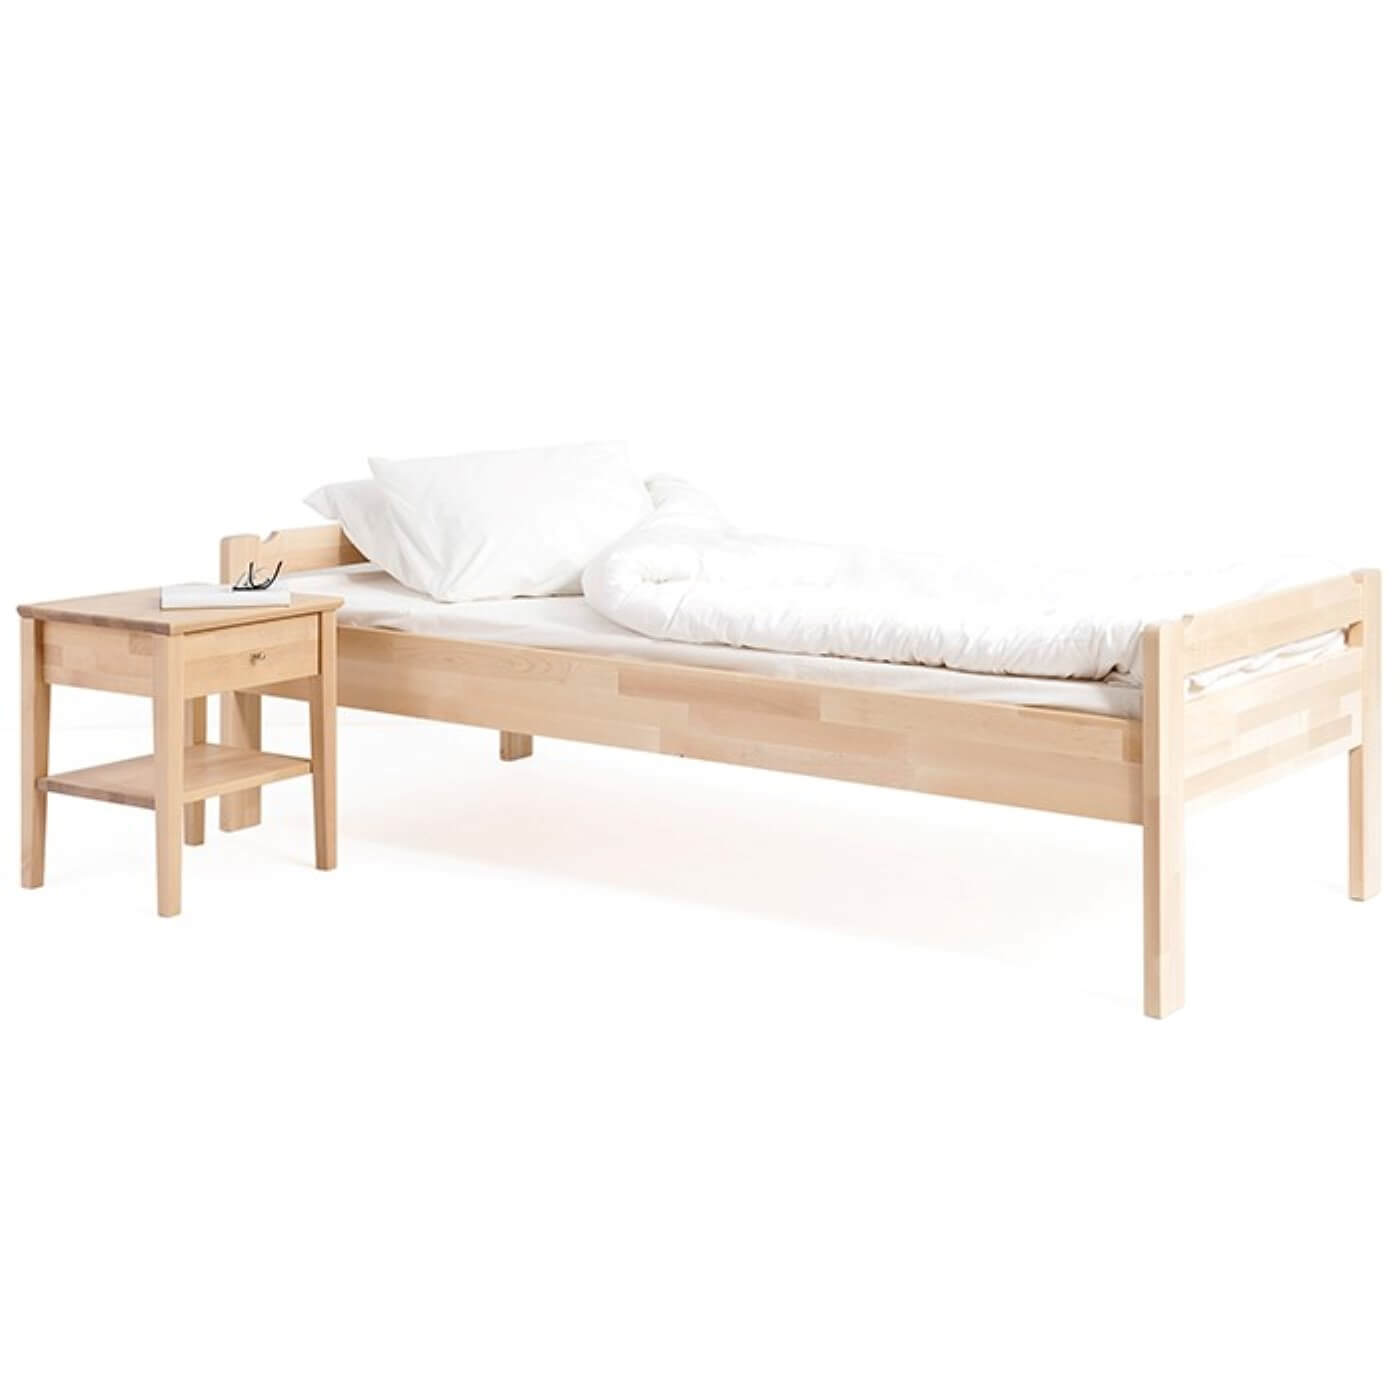 Łóżko z niskim zagłówkiem KUUSAMO z materacem 90x200, białą kołdrą i poduszką. Łóżko na wysokich prostych nóżkach widoczne w całości razem ze stolikiem nocnym drewnianym. Na stoliku leży książka i okulary. Skandynawski design